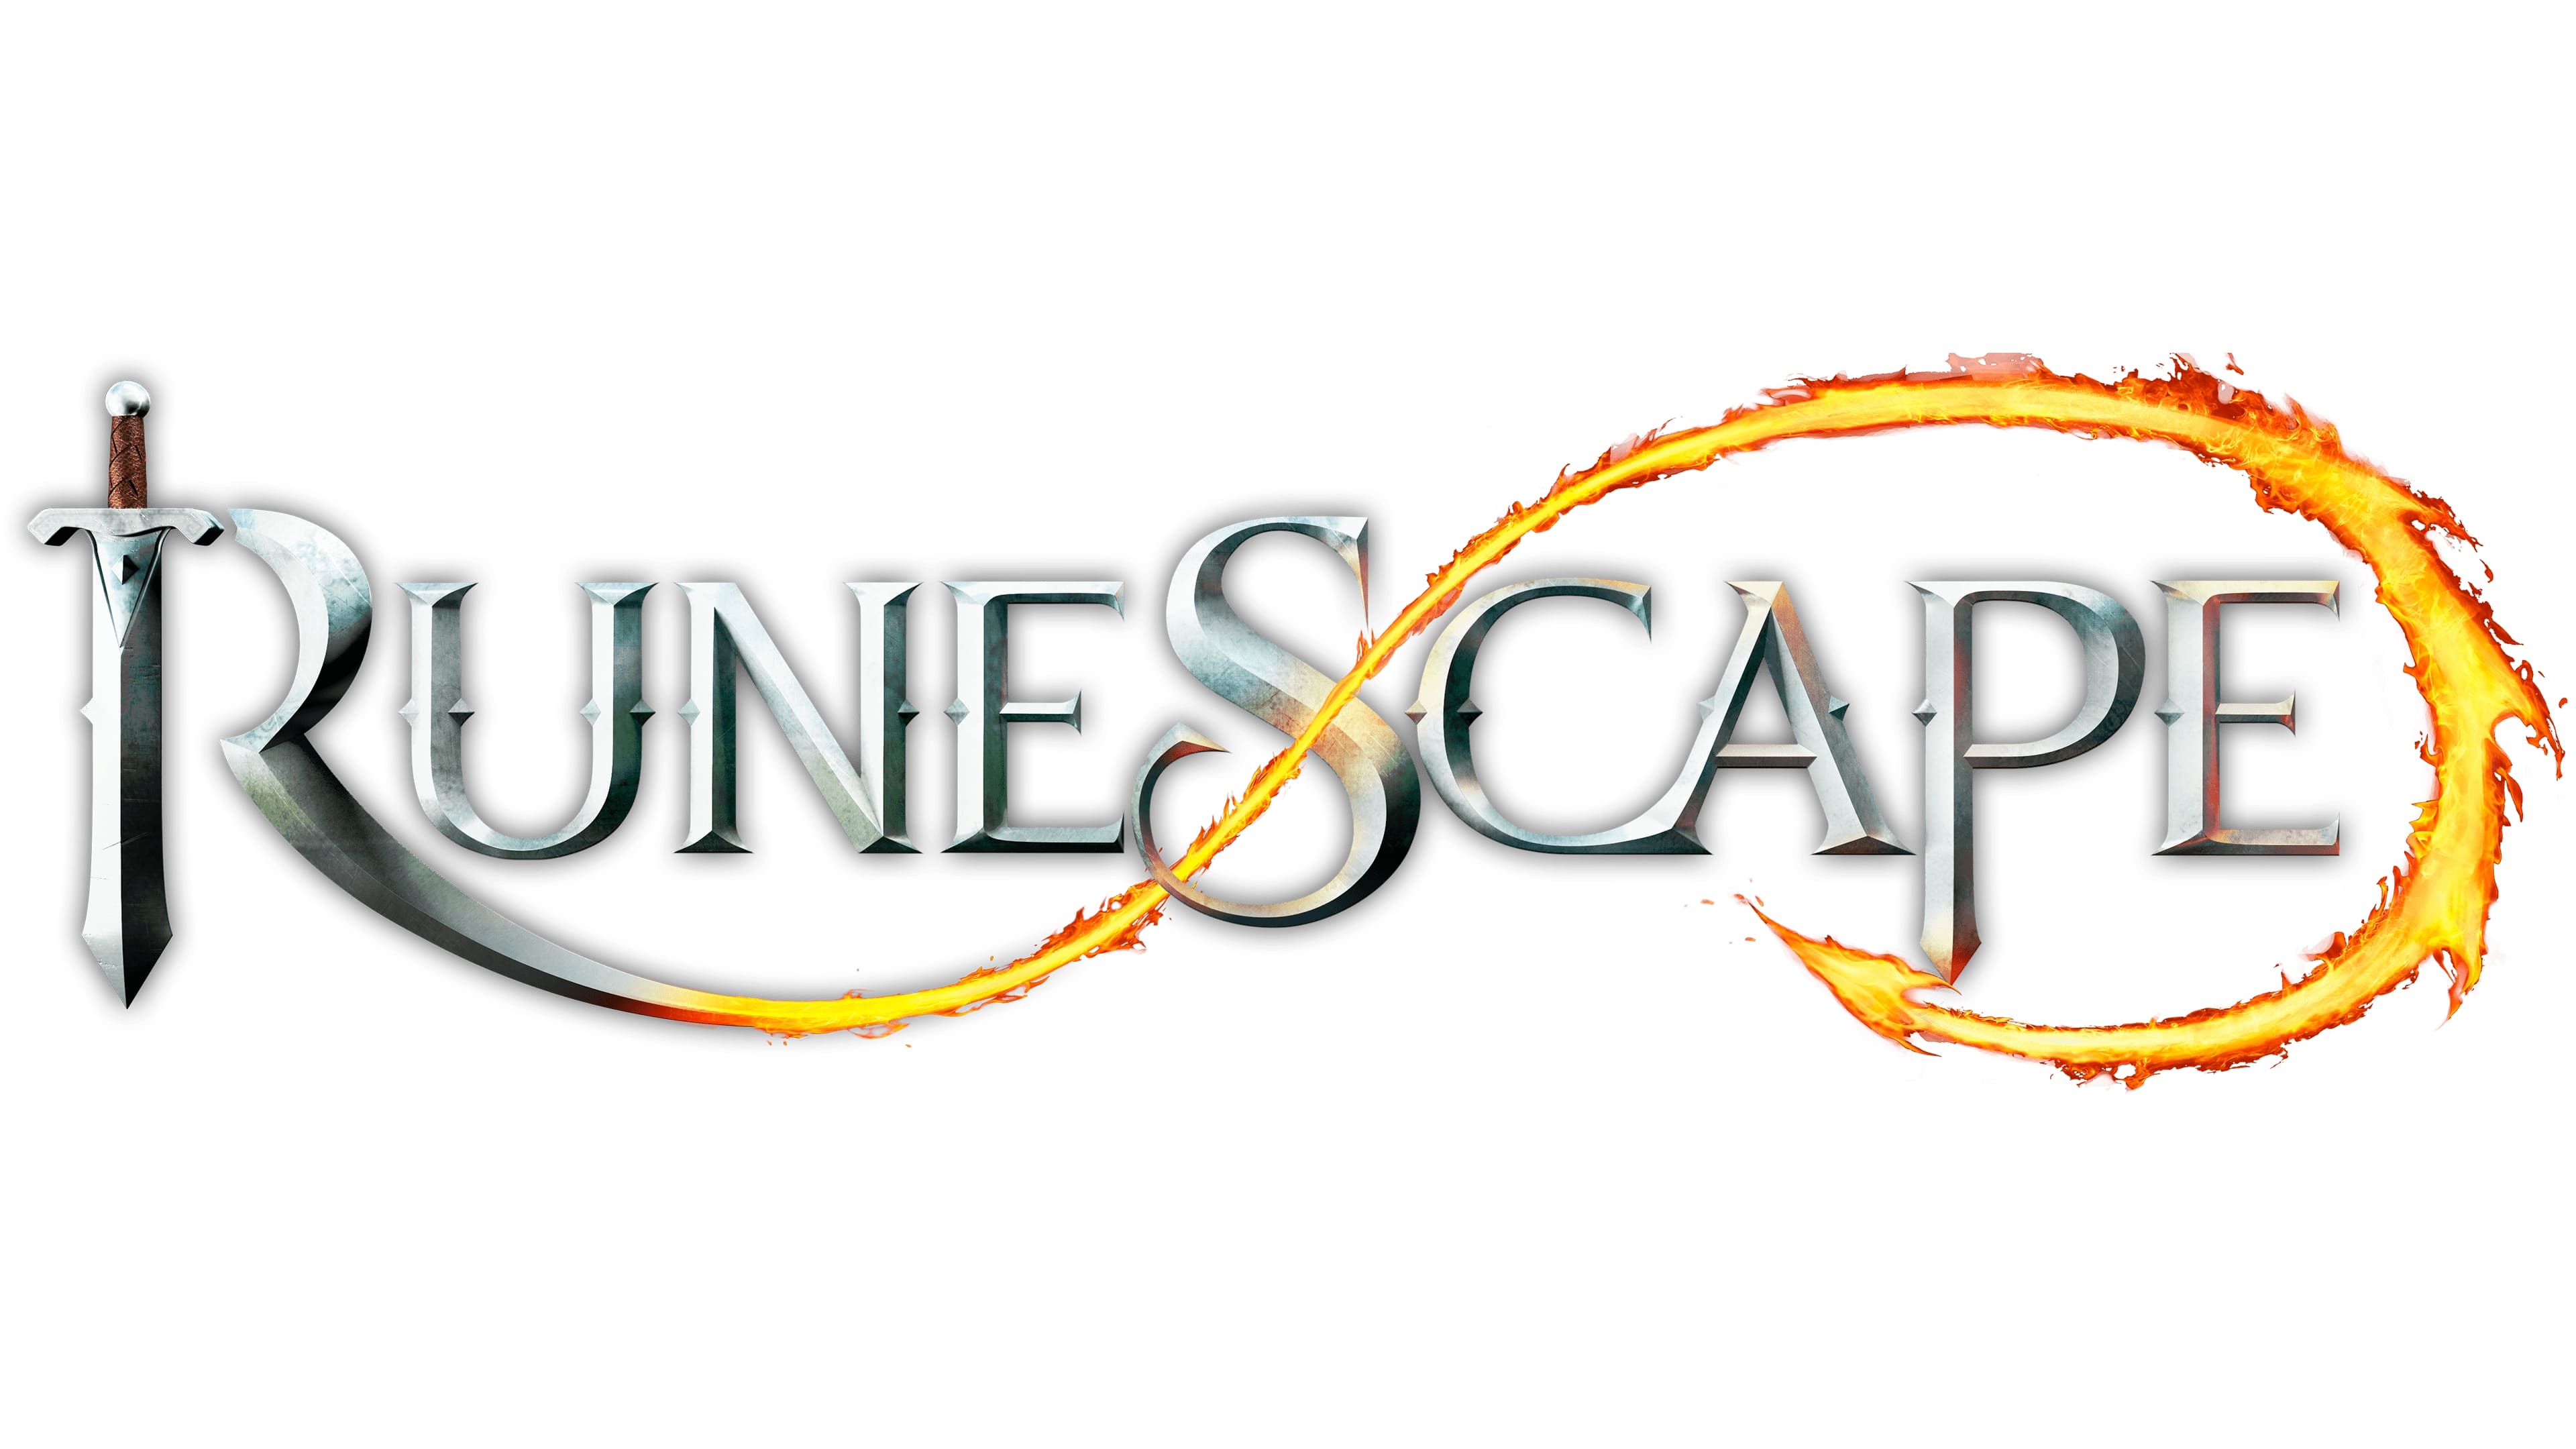 Evolution of Runescape, 1998 - 2022